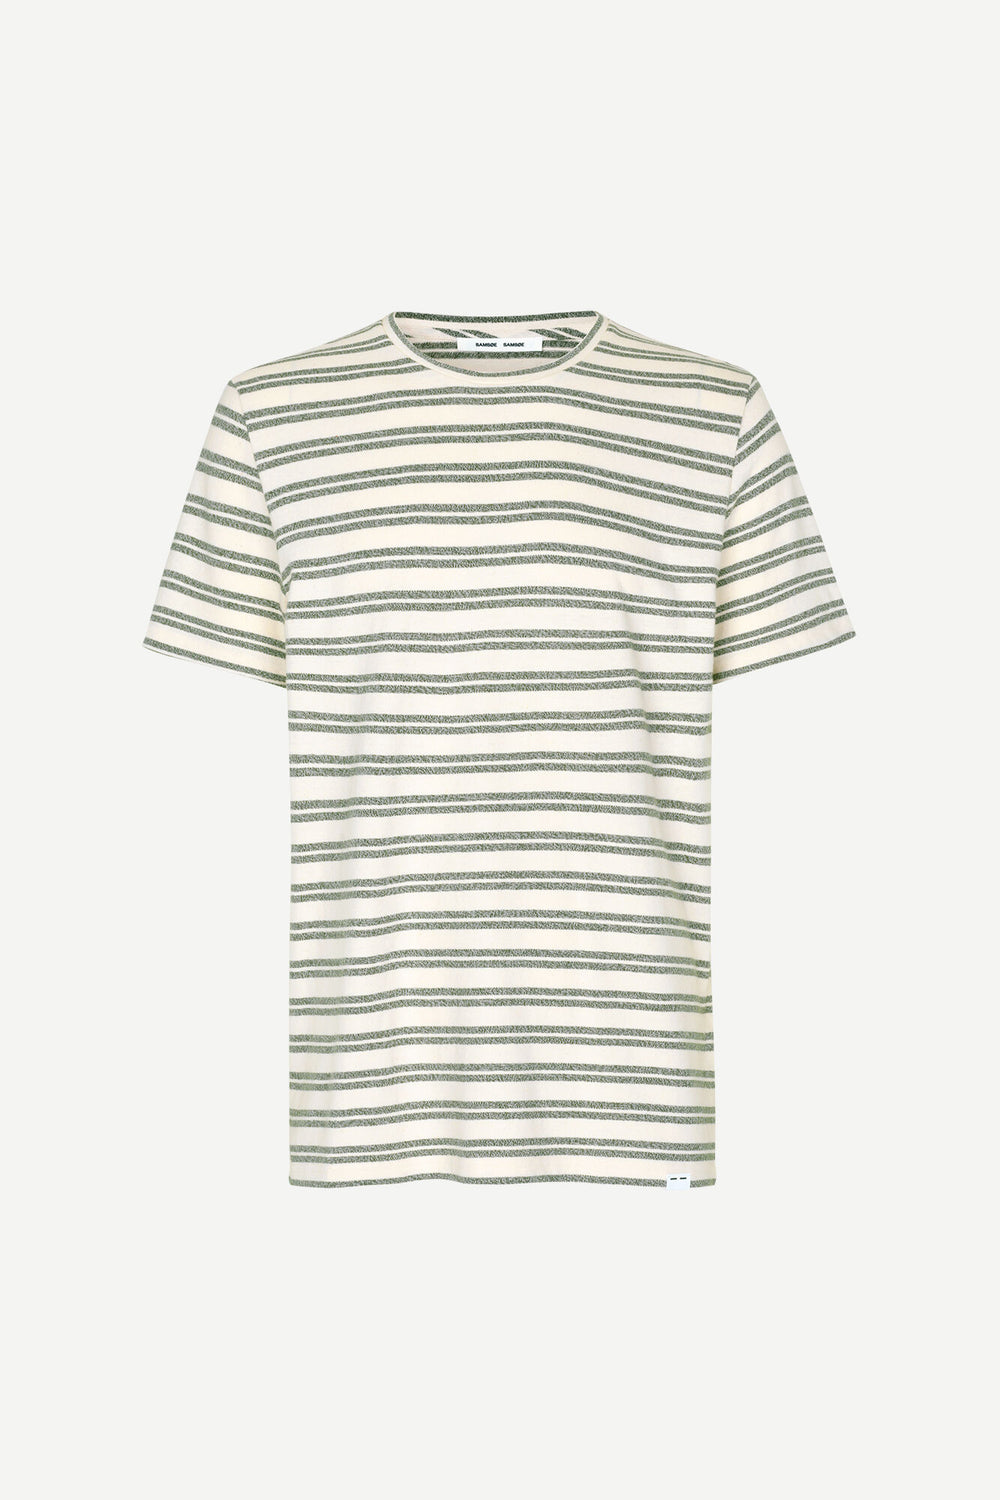 Samsøe Samsøe - Carpo x T-Shirt - Kambu Green Stripe